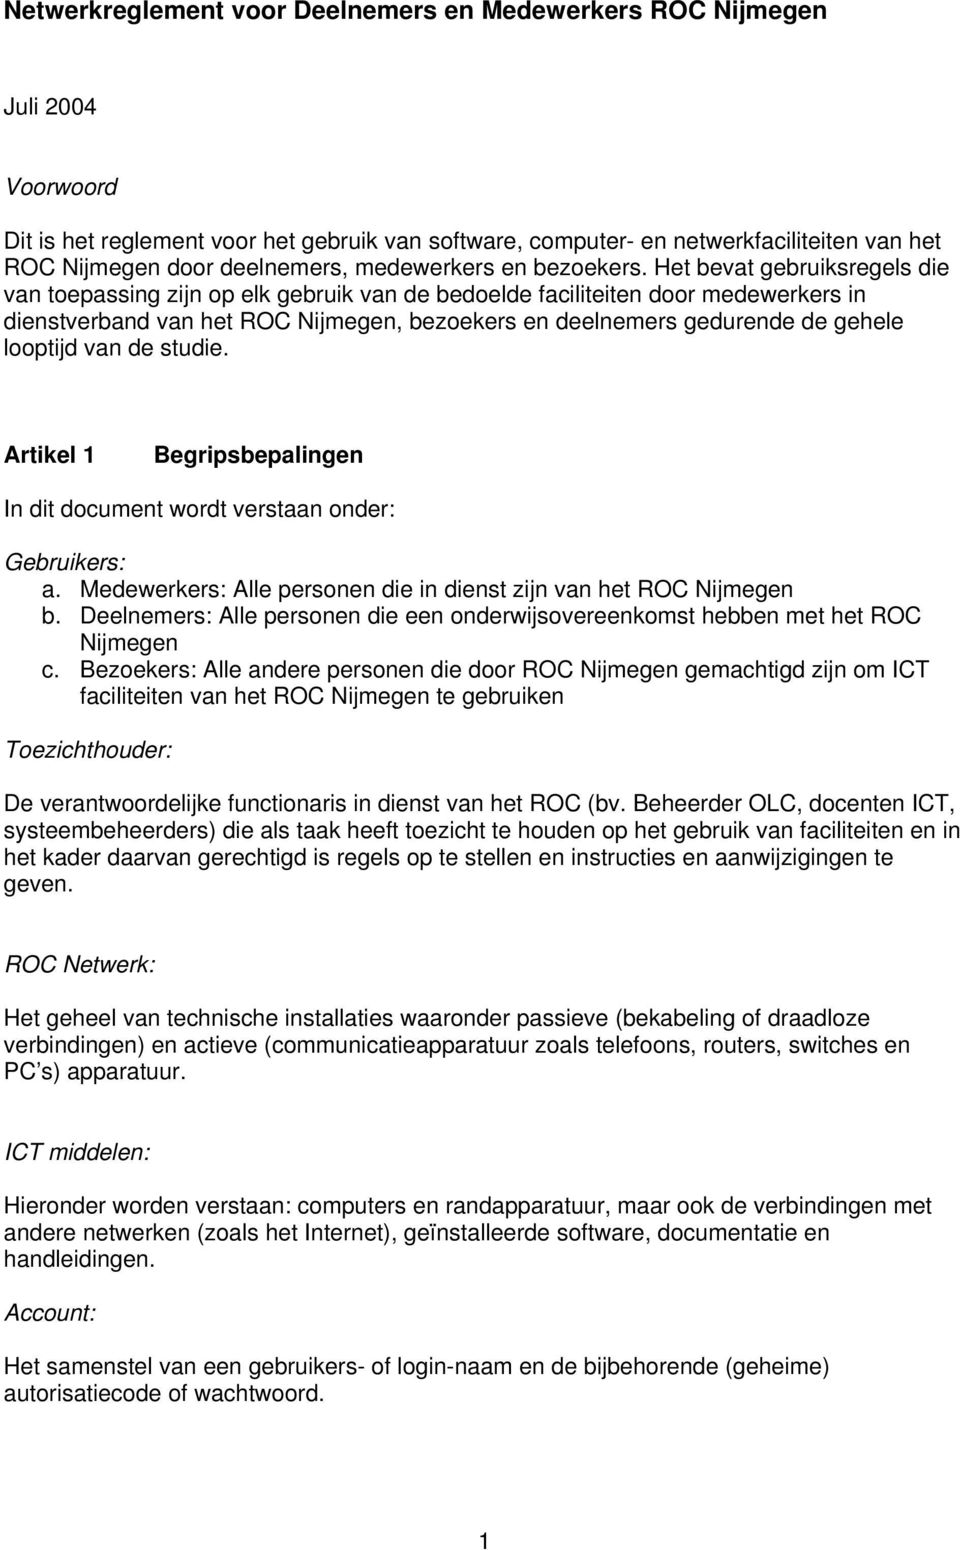 Het bevat gebruiksregels die van toepassing zijn op elk gebruik van de bedoelde faciliteiten door medewerkers in dienstverband van het ROC Nijmegen, bezoekers en deelnemers gedurende de gehele